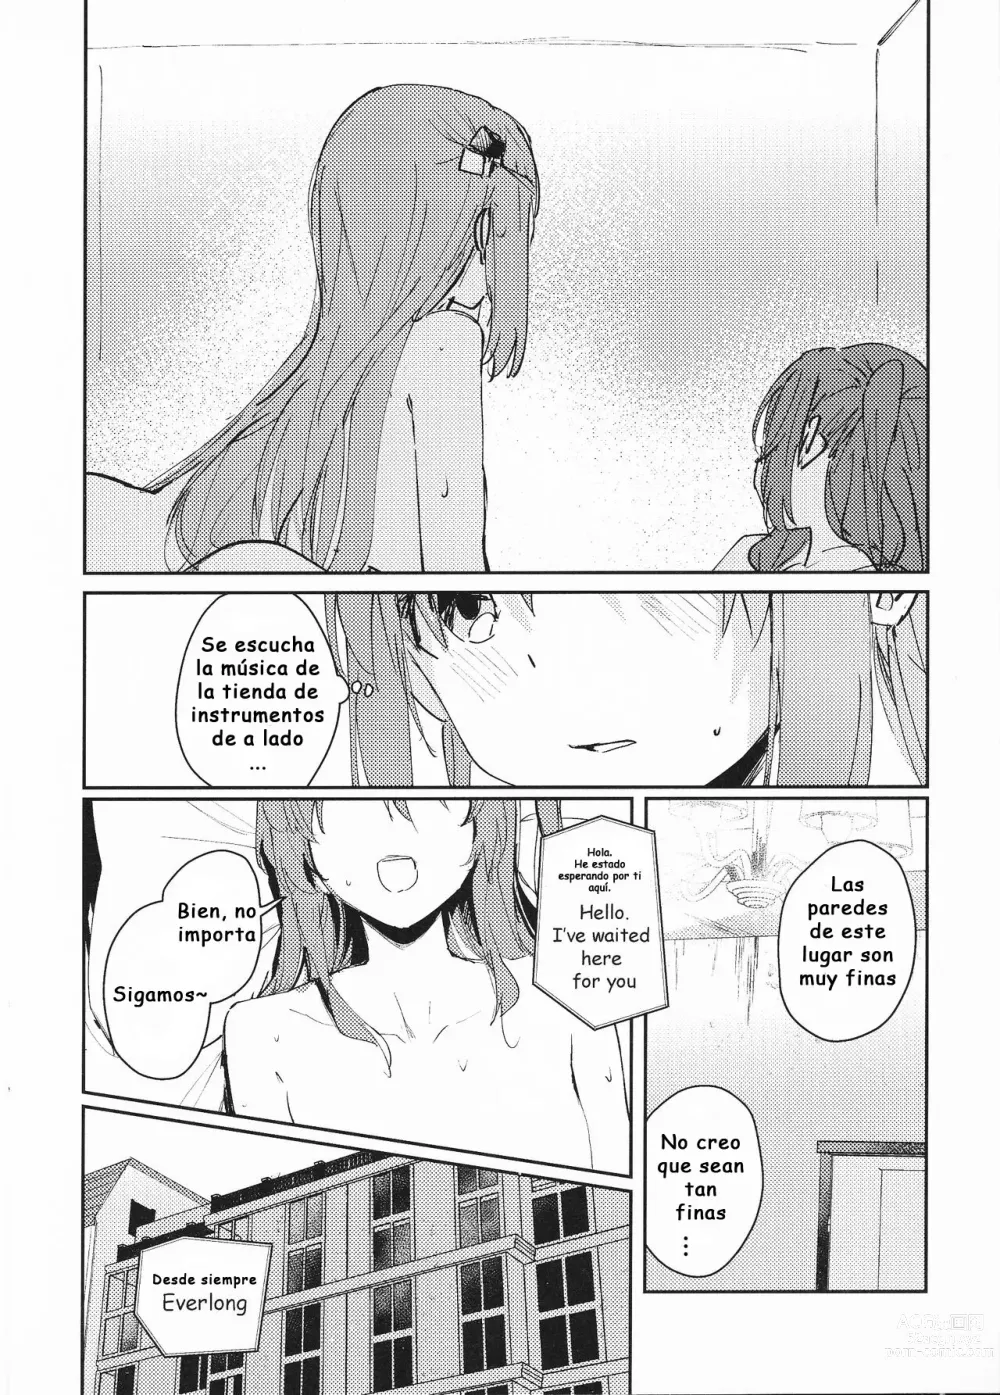 Page 9 of doujinshi Everlong